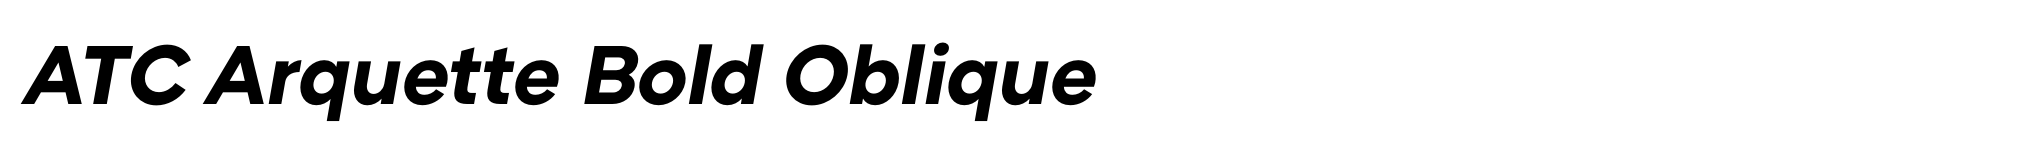 ATC Arquette Bold Oblique image